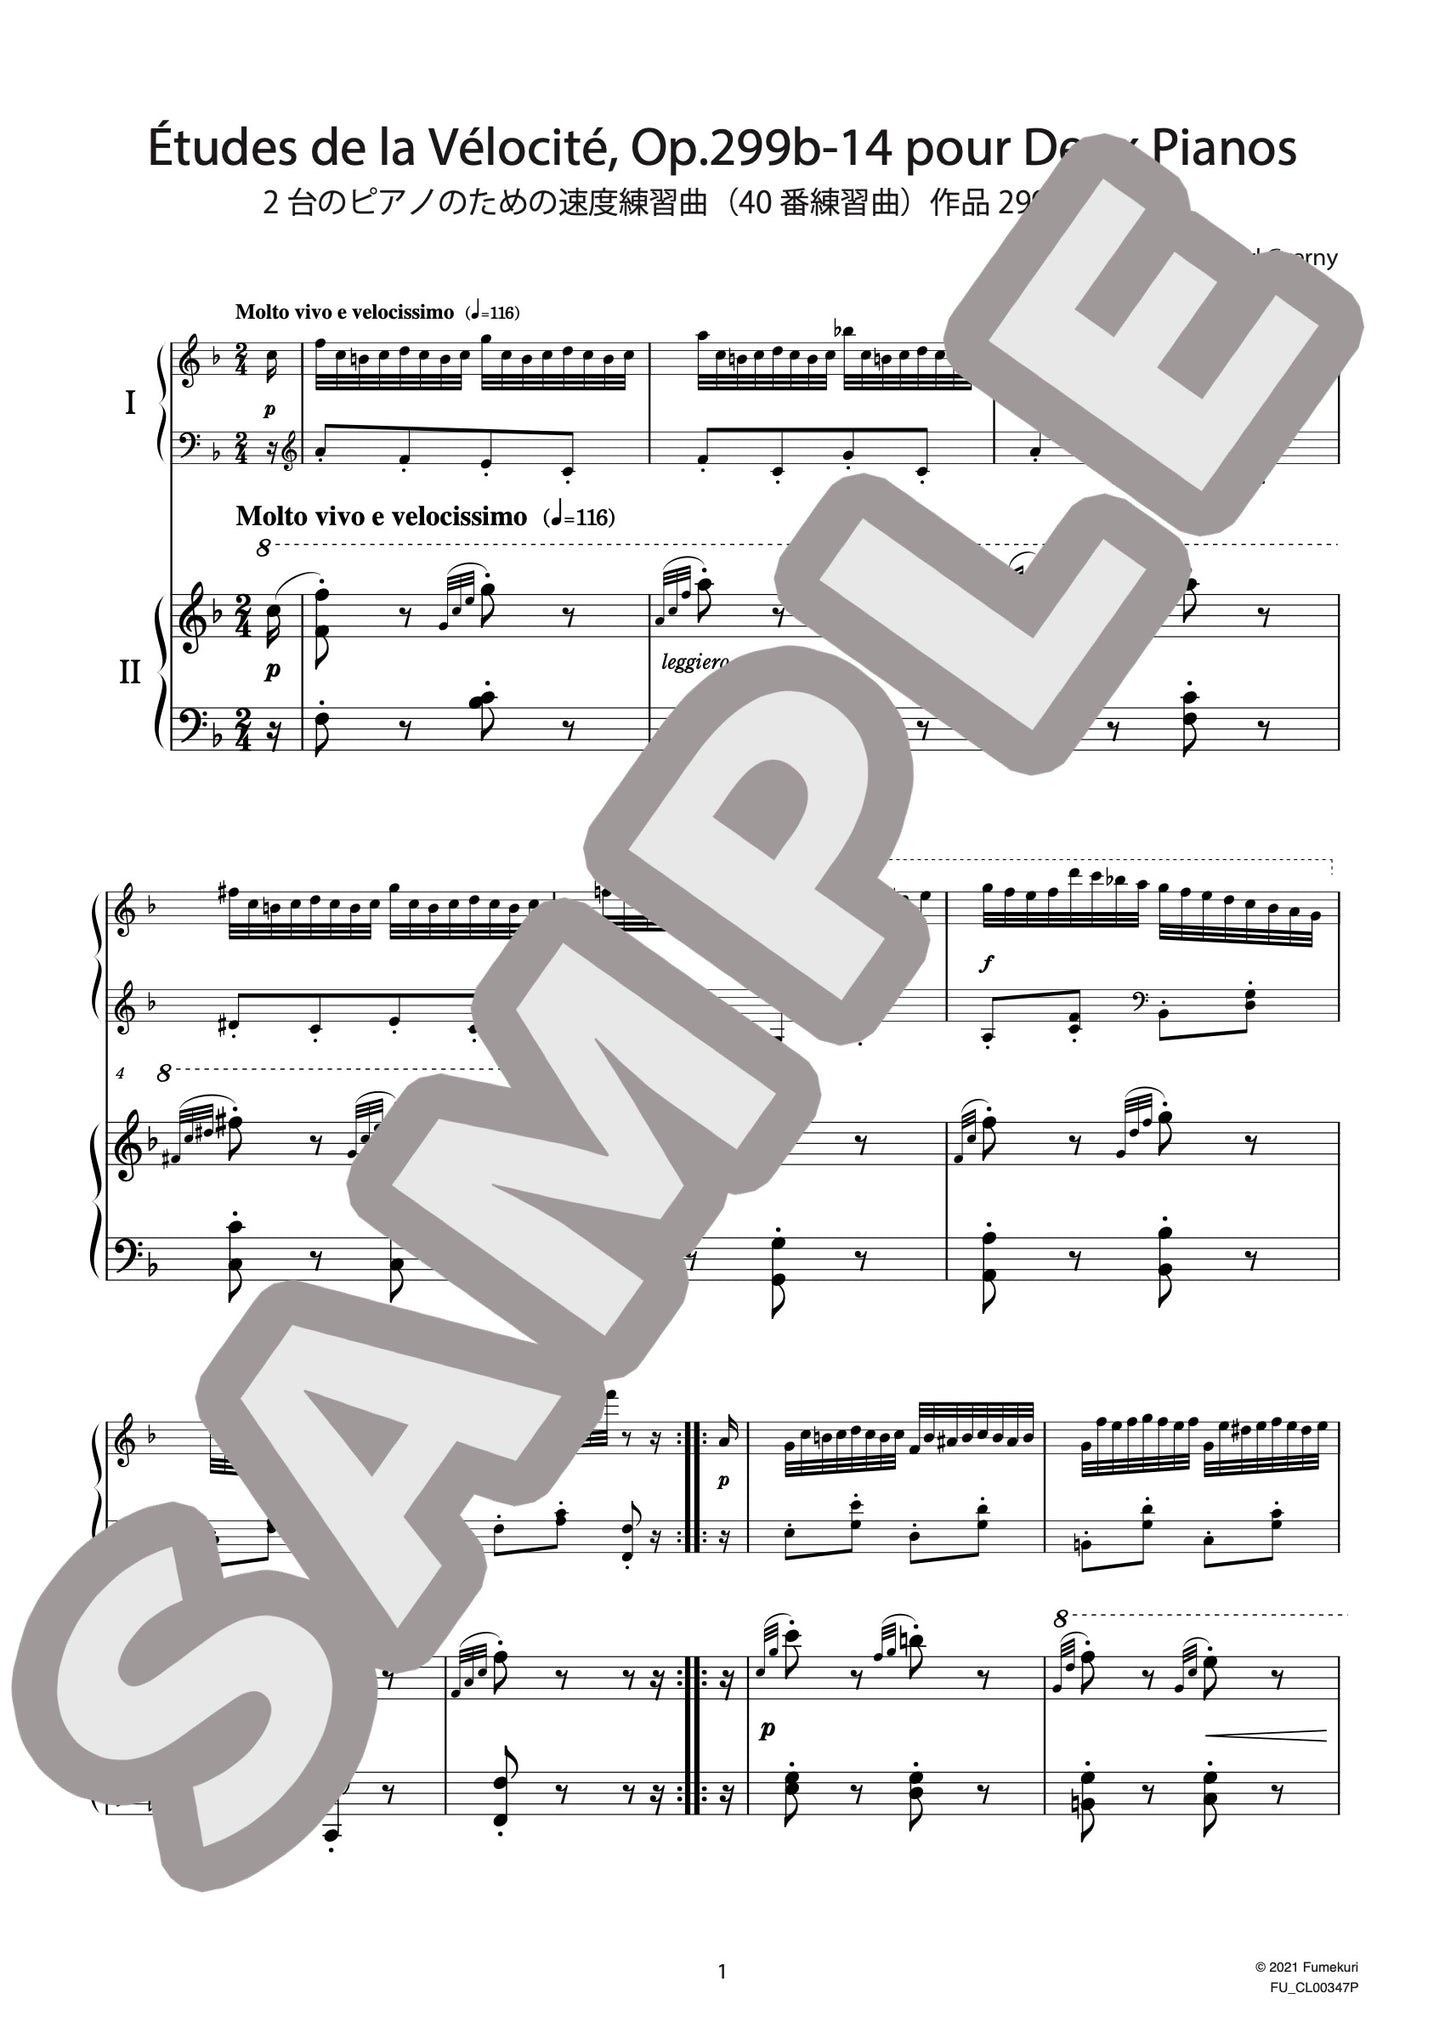 2台のピアノのための速度練習曲（40番練習曲）作品299b 第14番（CZERNY) / クラシック・オリジナル楽曲【中上級】